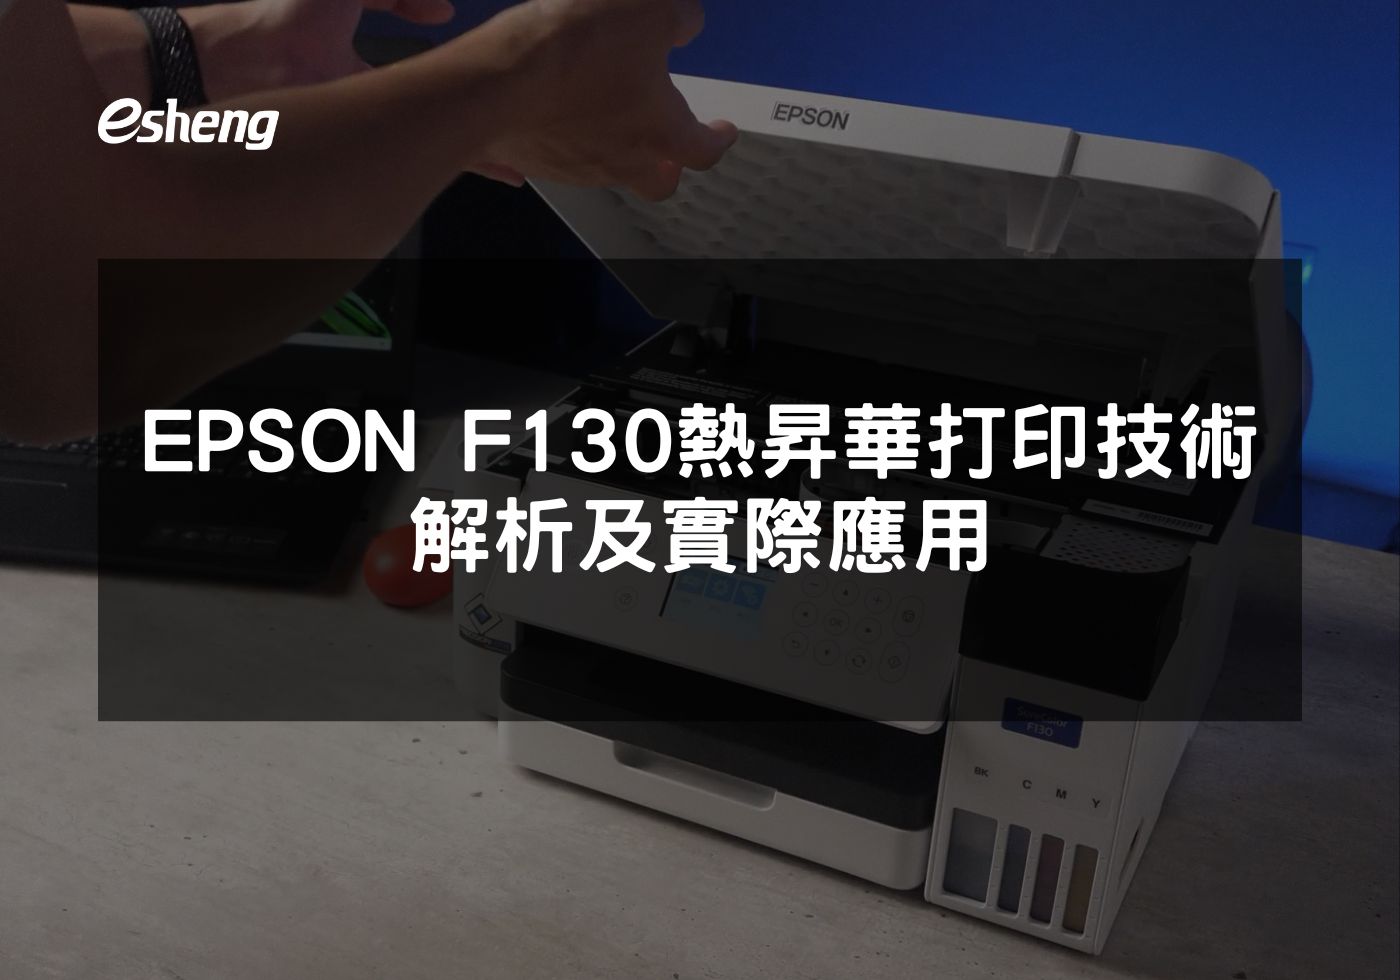 EPSON F130熱昇華印表機提高生產效率和環保標準